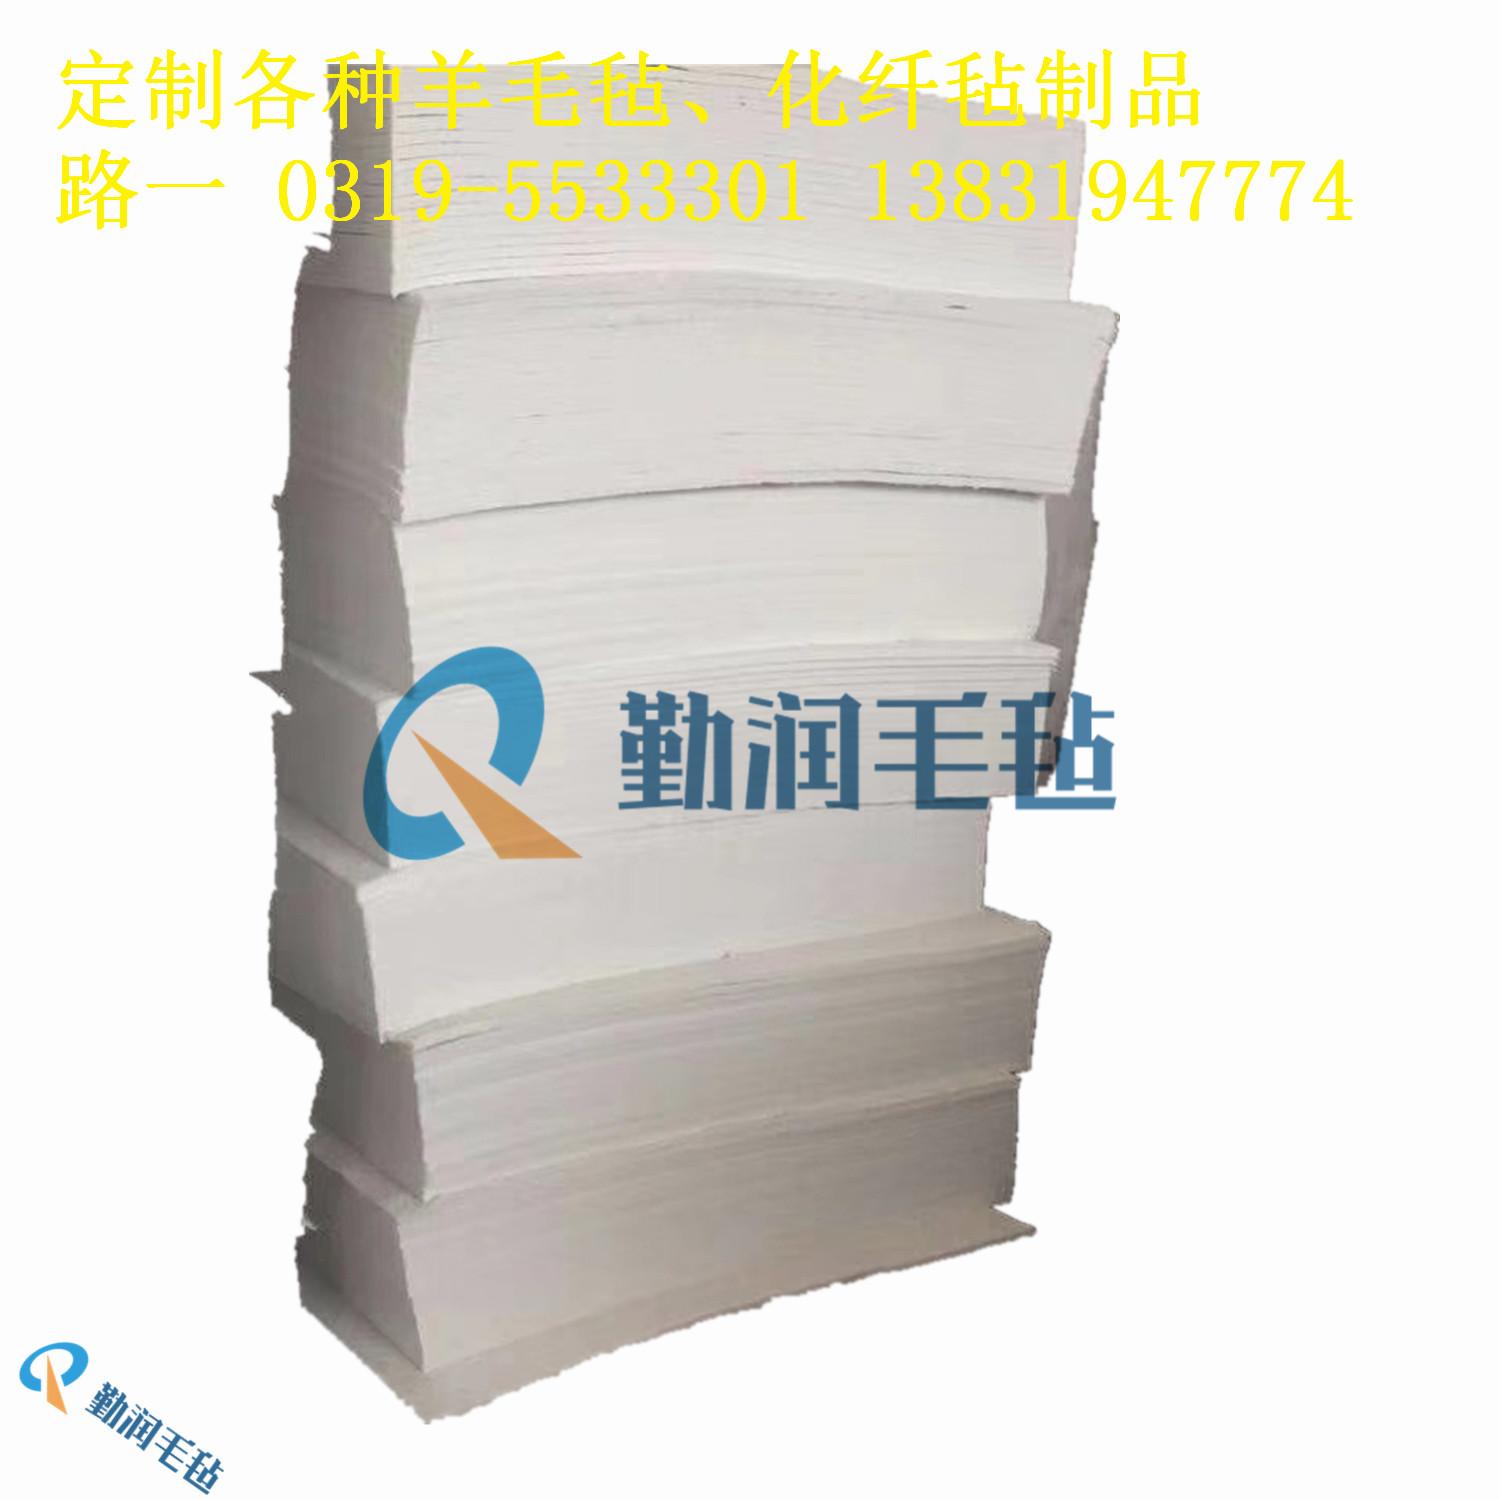 厂家直销杭州高密度工业细白羊毛毡上海密封减震过滤吸